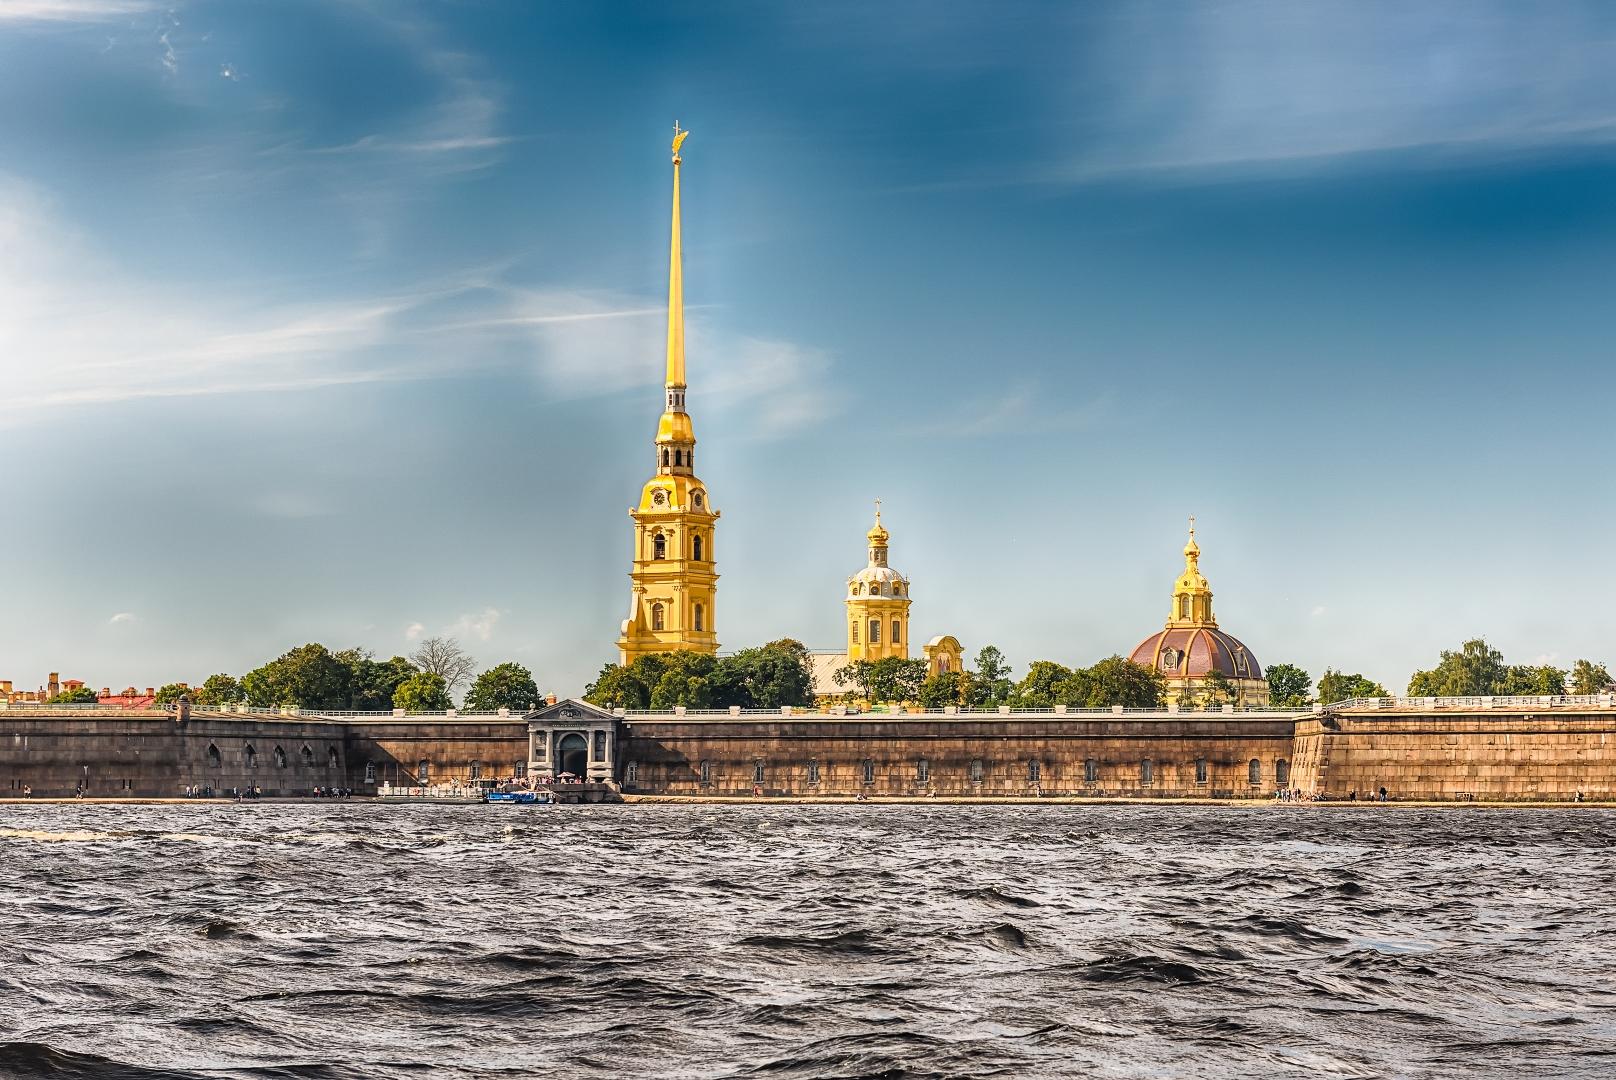 Большая обзорная экскурсия «Санкт-Петербург и Петропавловская крепость» со скидкой 51%